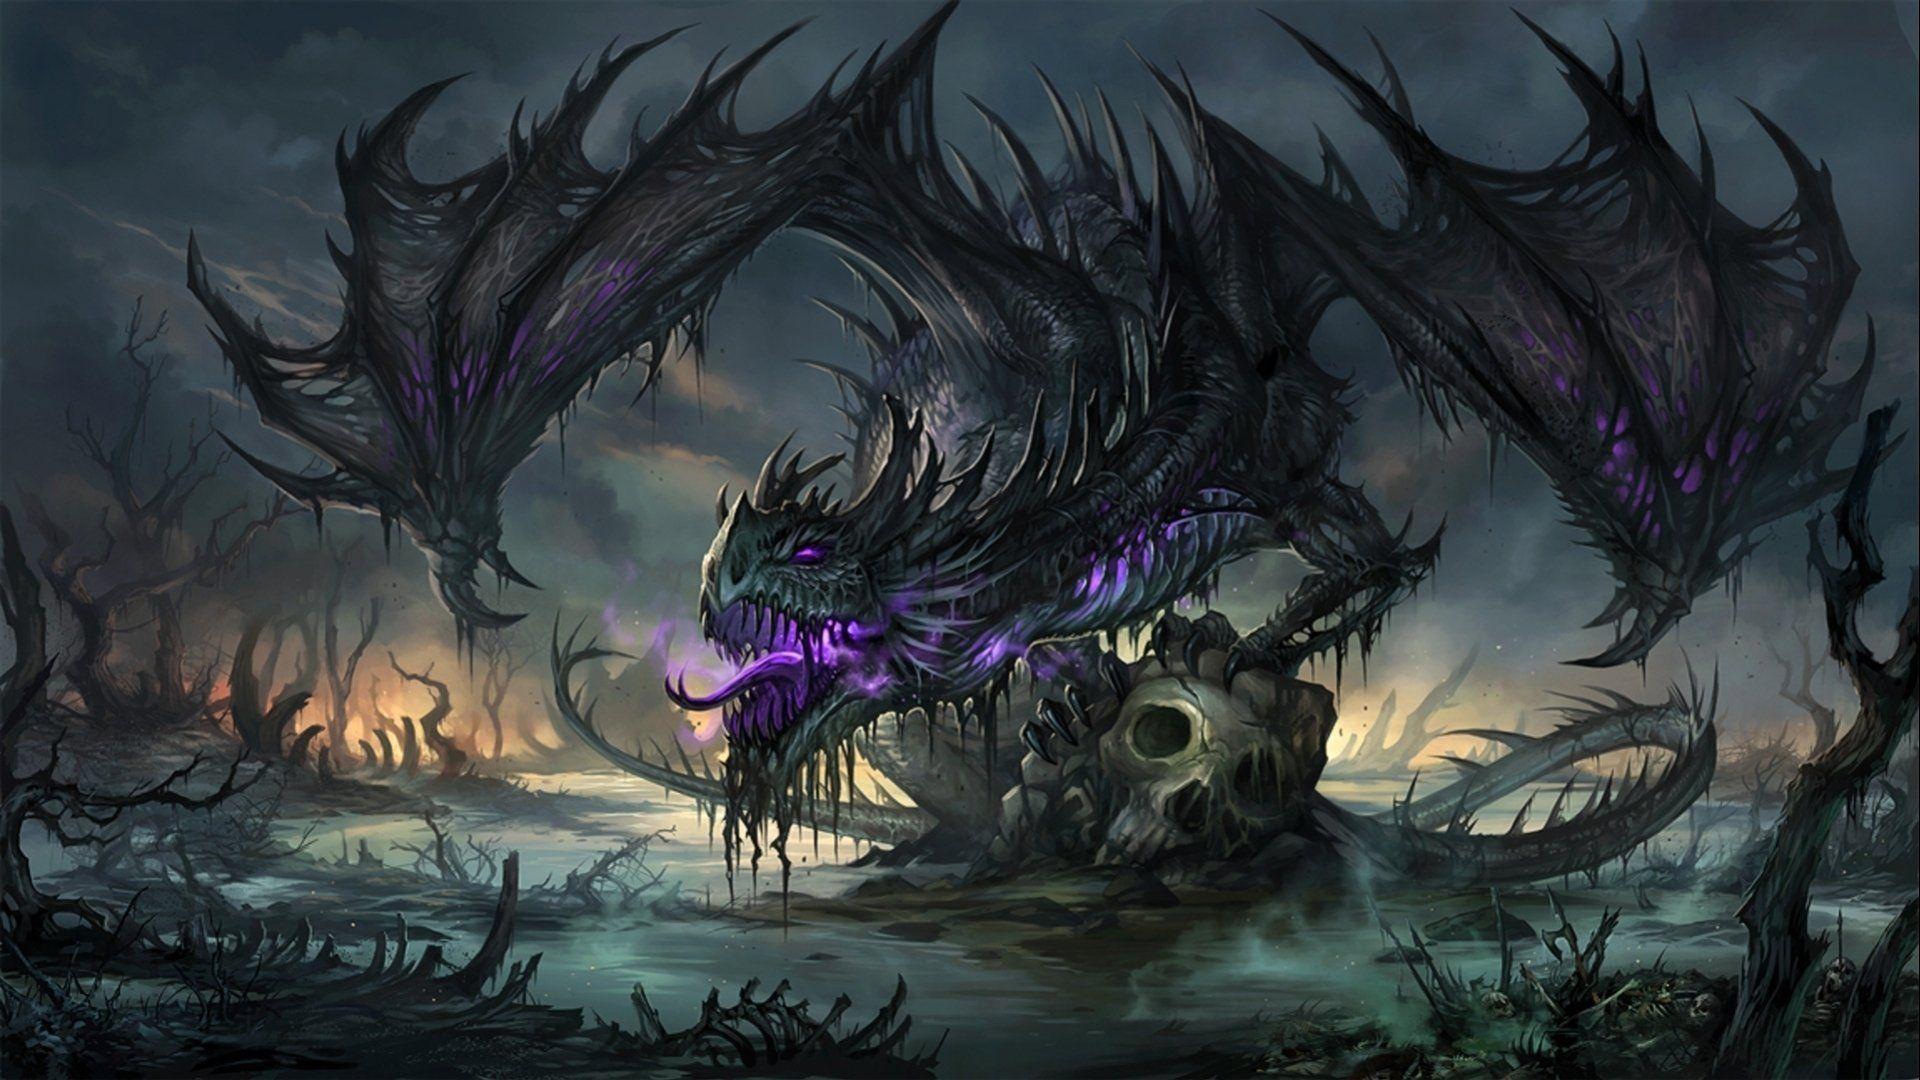 Purple Dragon Wallpaper